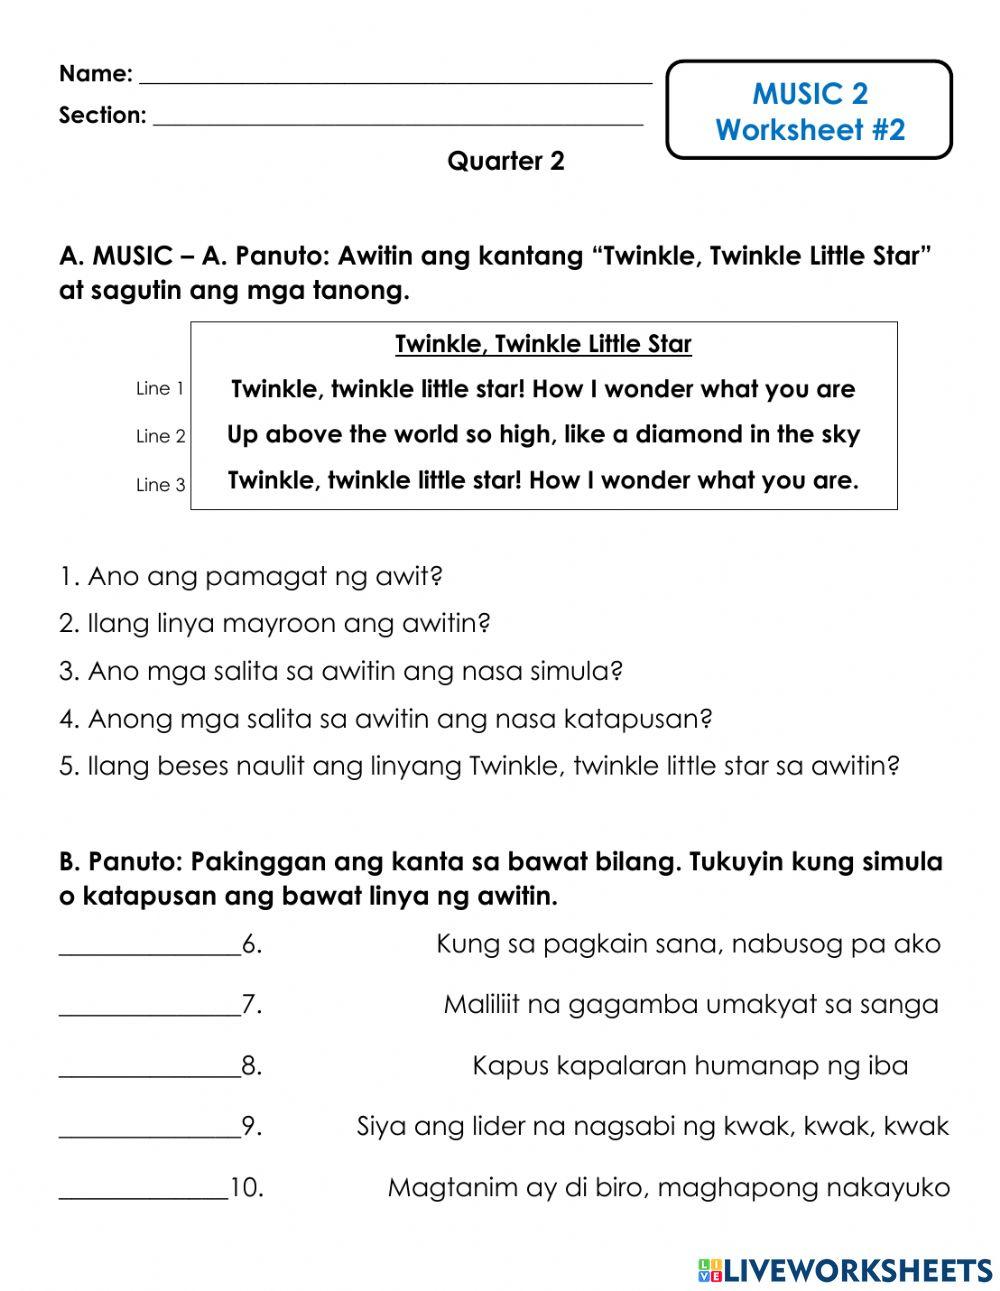 Music Worksheet 2 - Simula at Katapusan ng Kanta